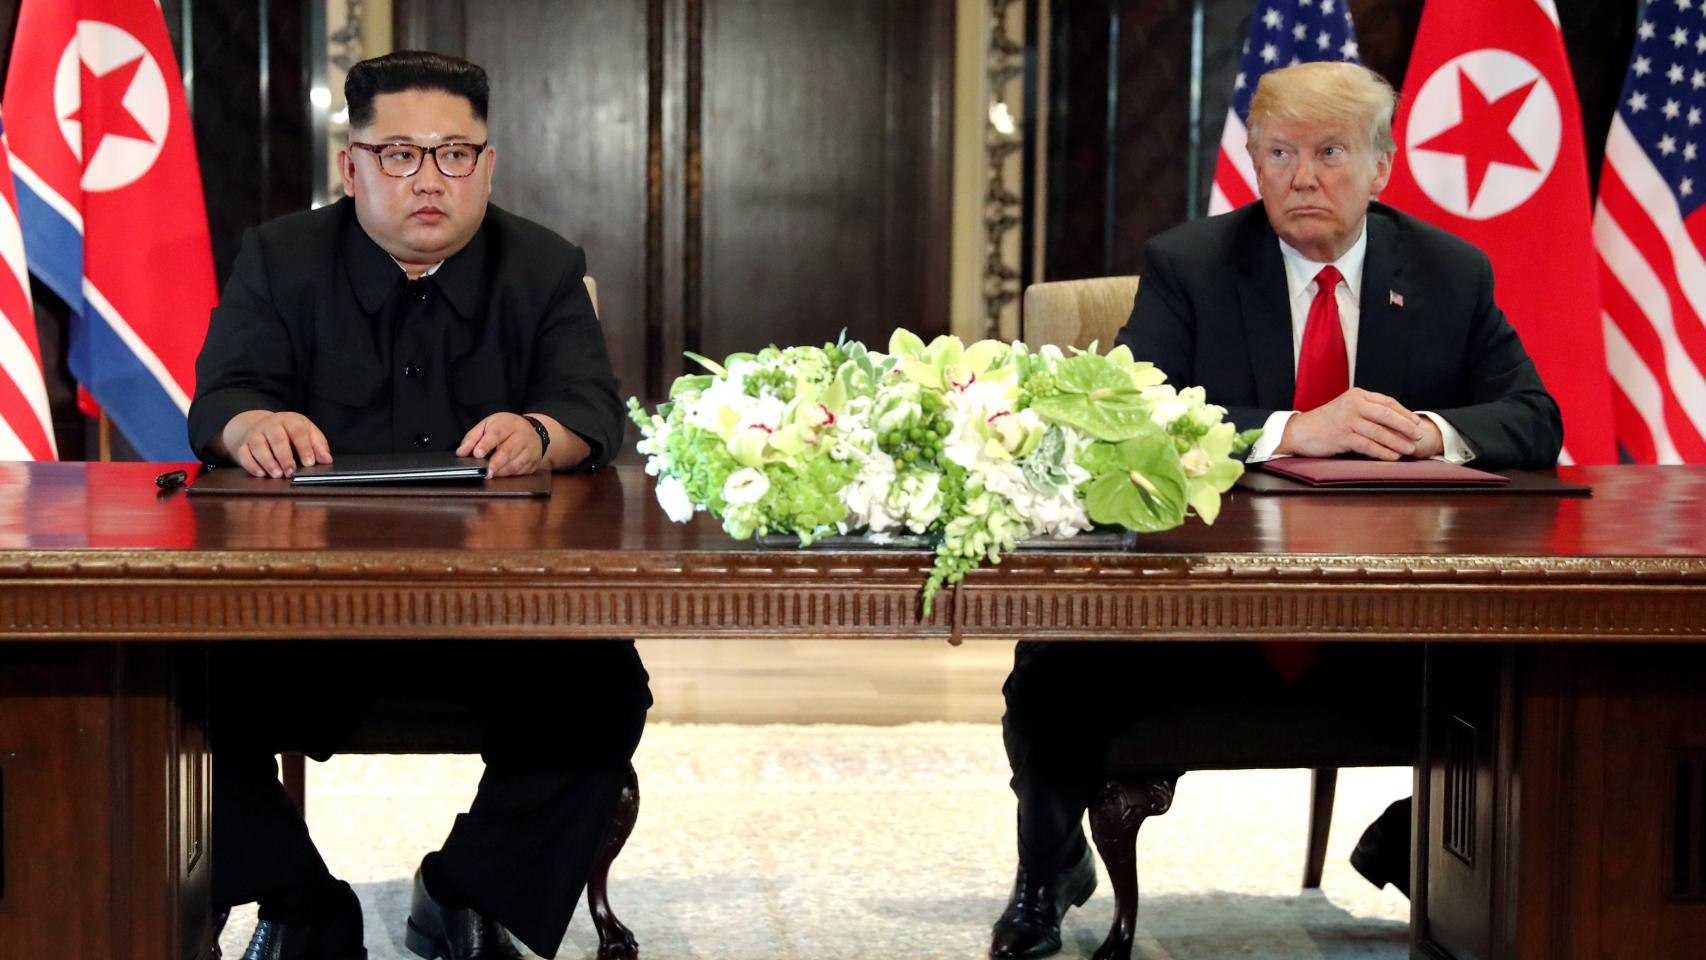 Kim Jong-un y Donald Trump tras la cumbre.